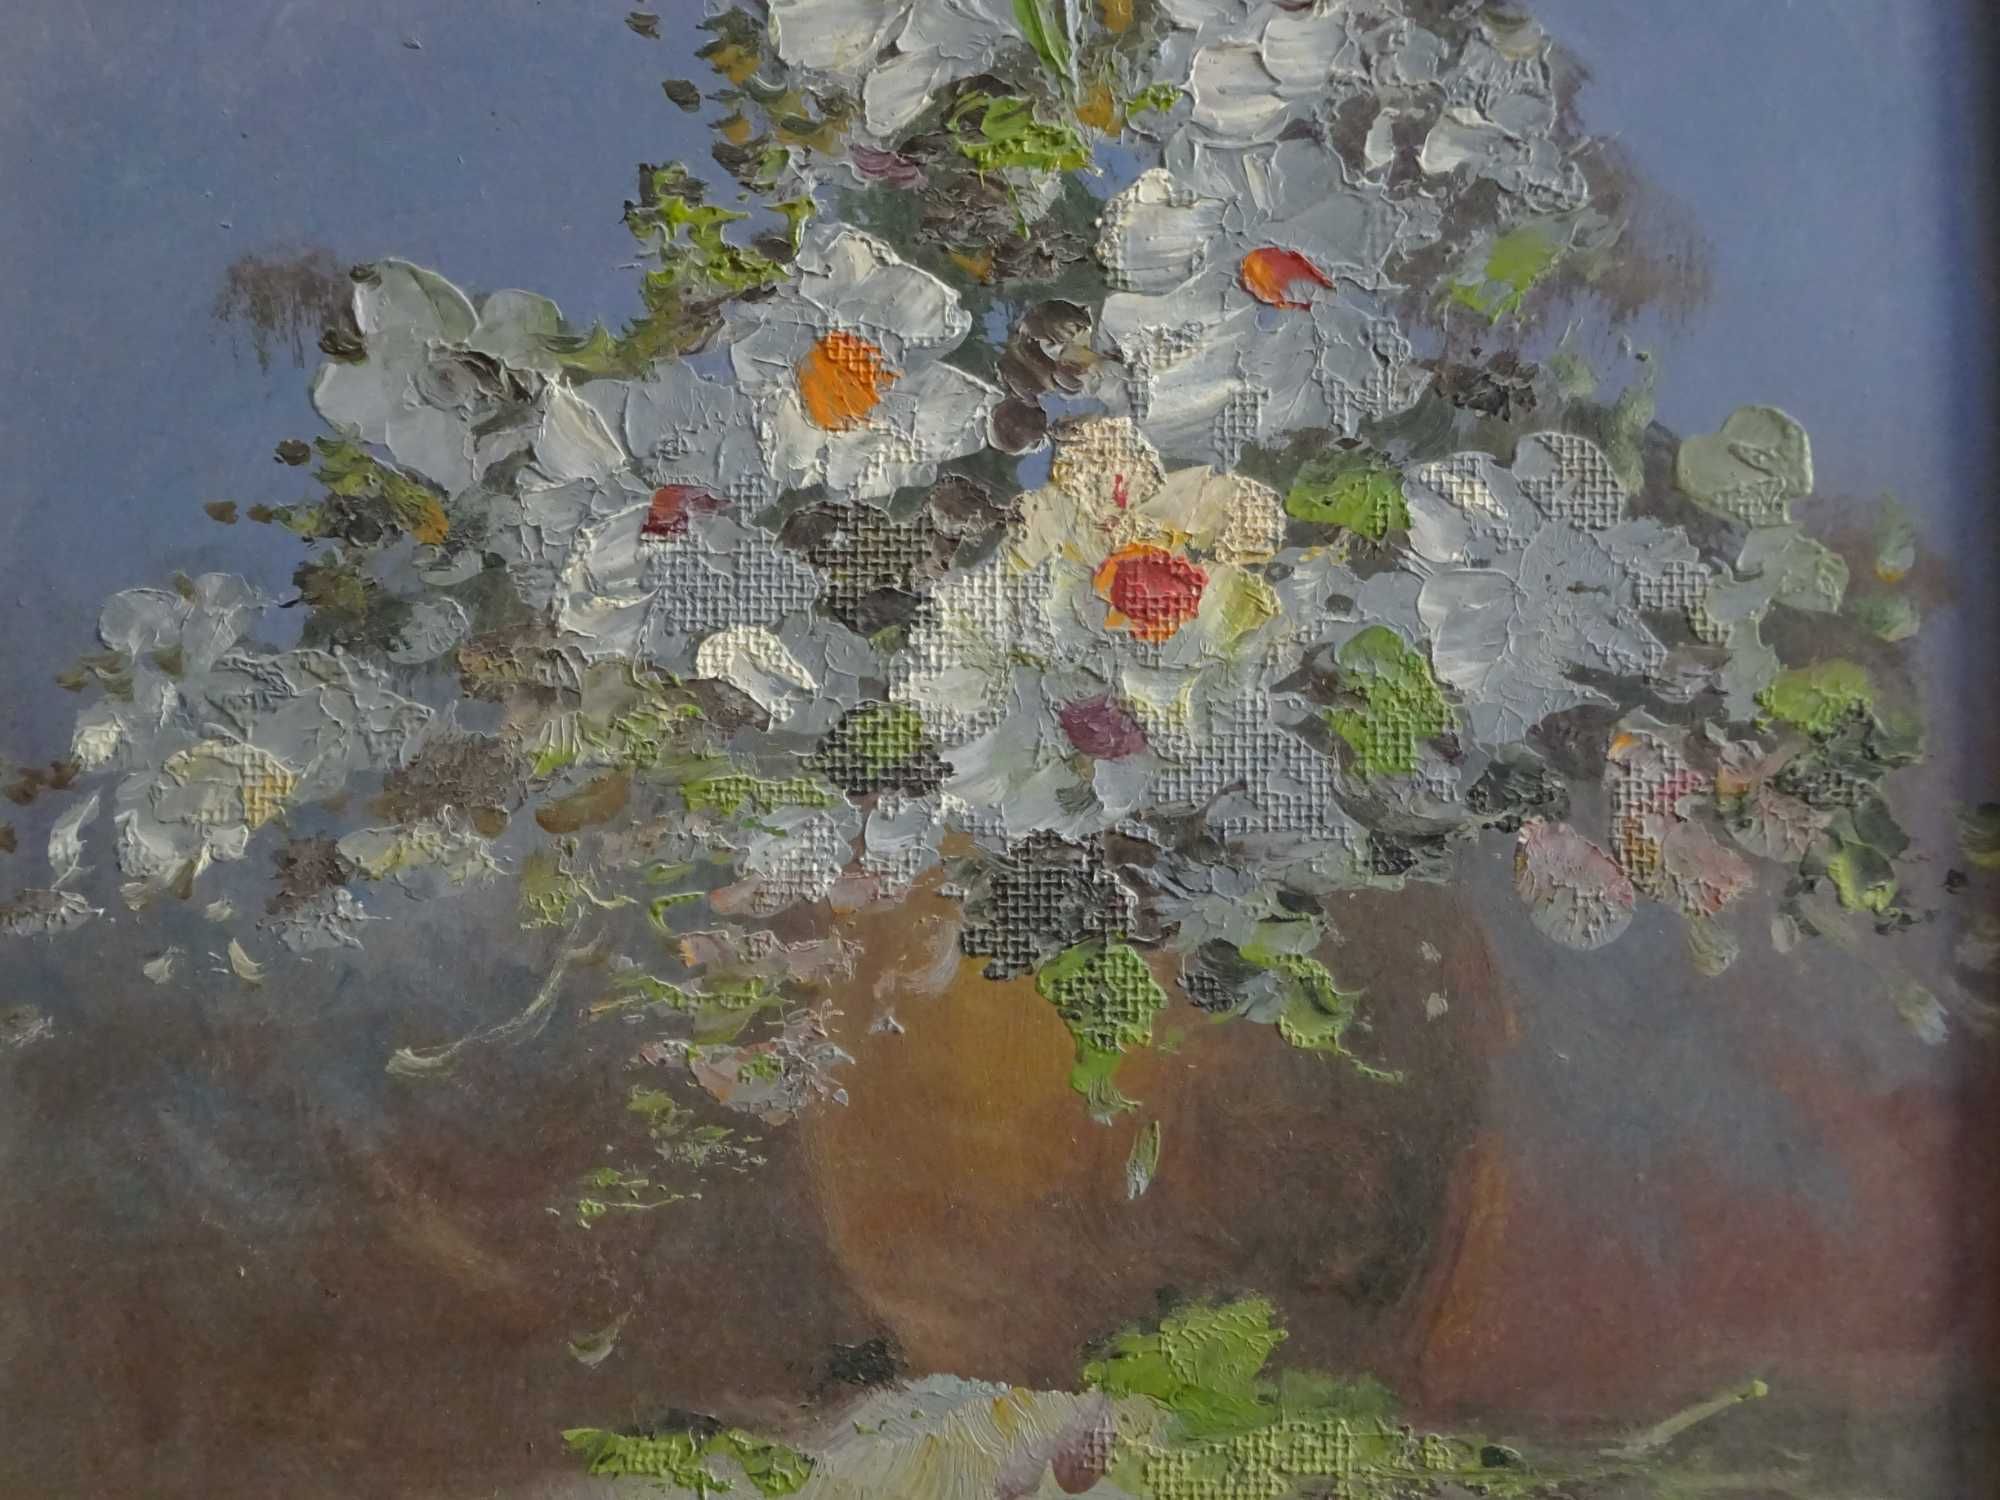 Tablou Nicolae Ambrozie ‘Flori albe’ -  Pictura veche pe carton